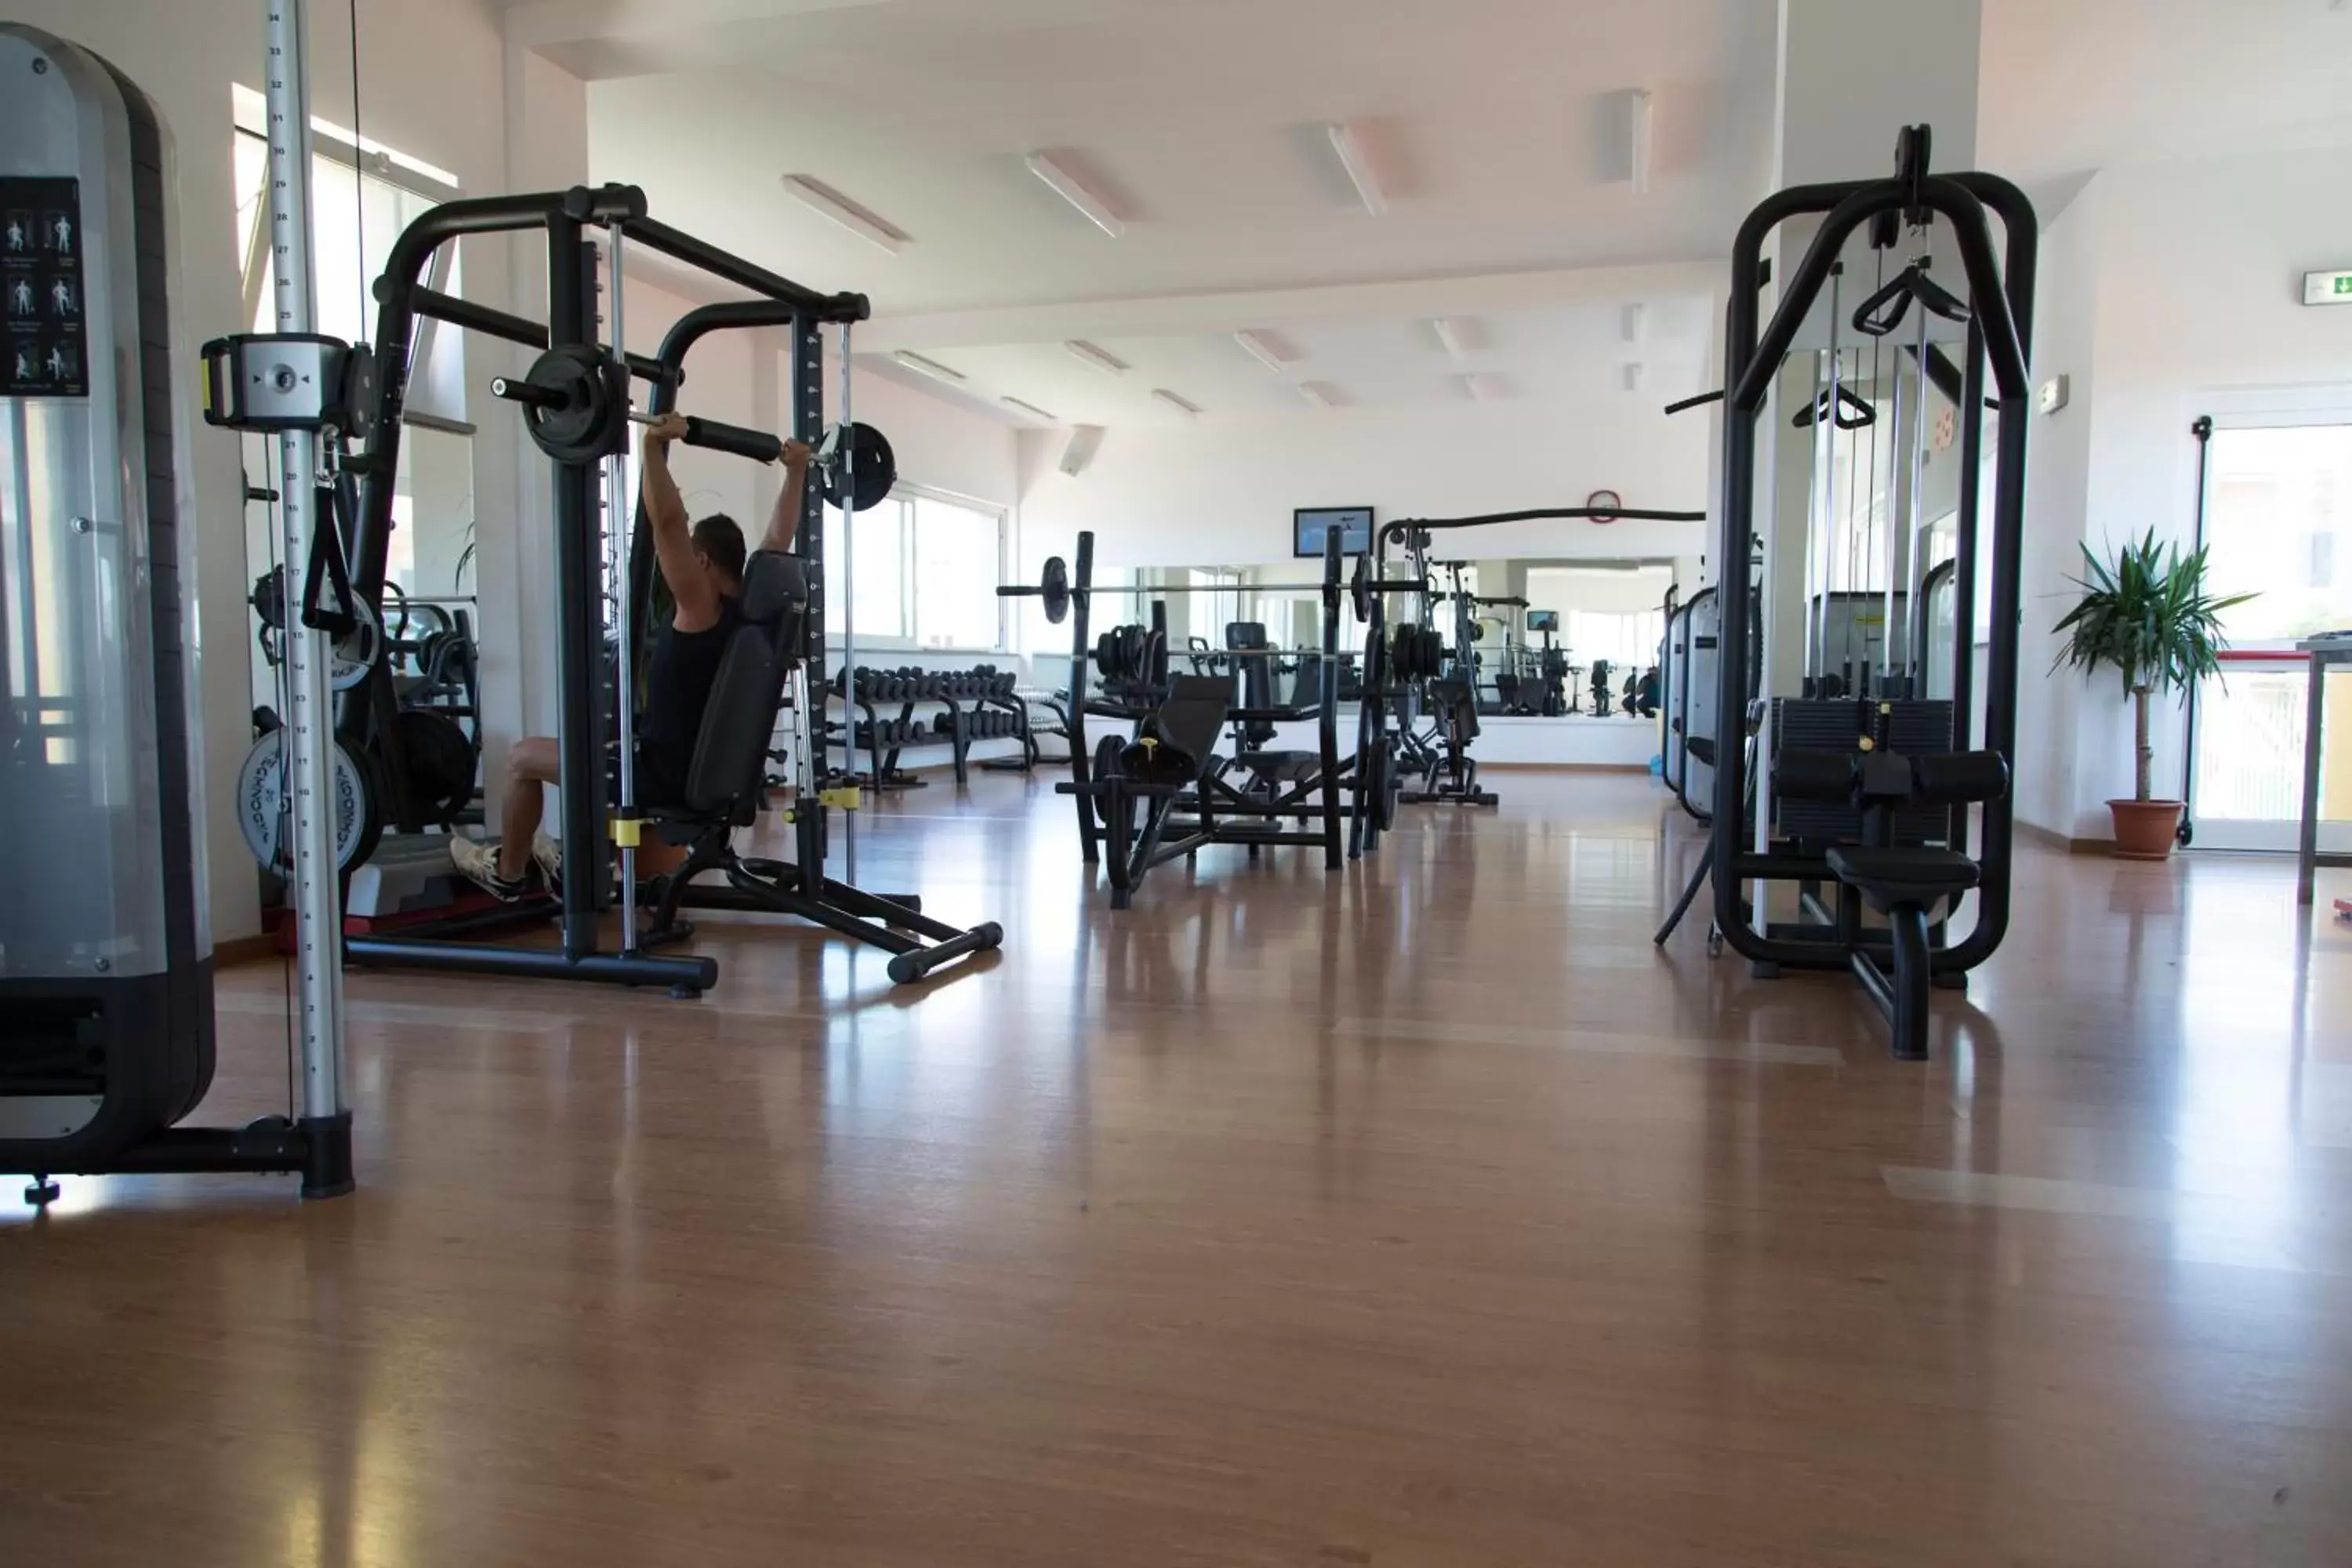 Fitness centre/facilities, Fitness Center/Facilities in Mercure Civitavecchia Sunbay Park Hotel